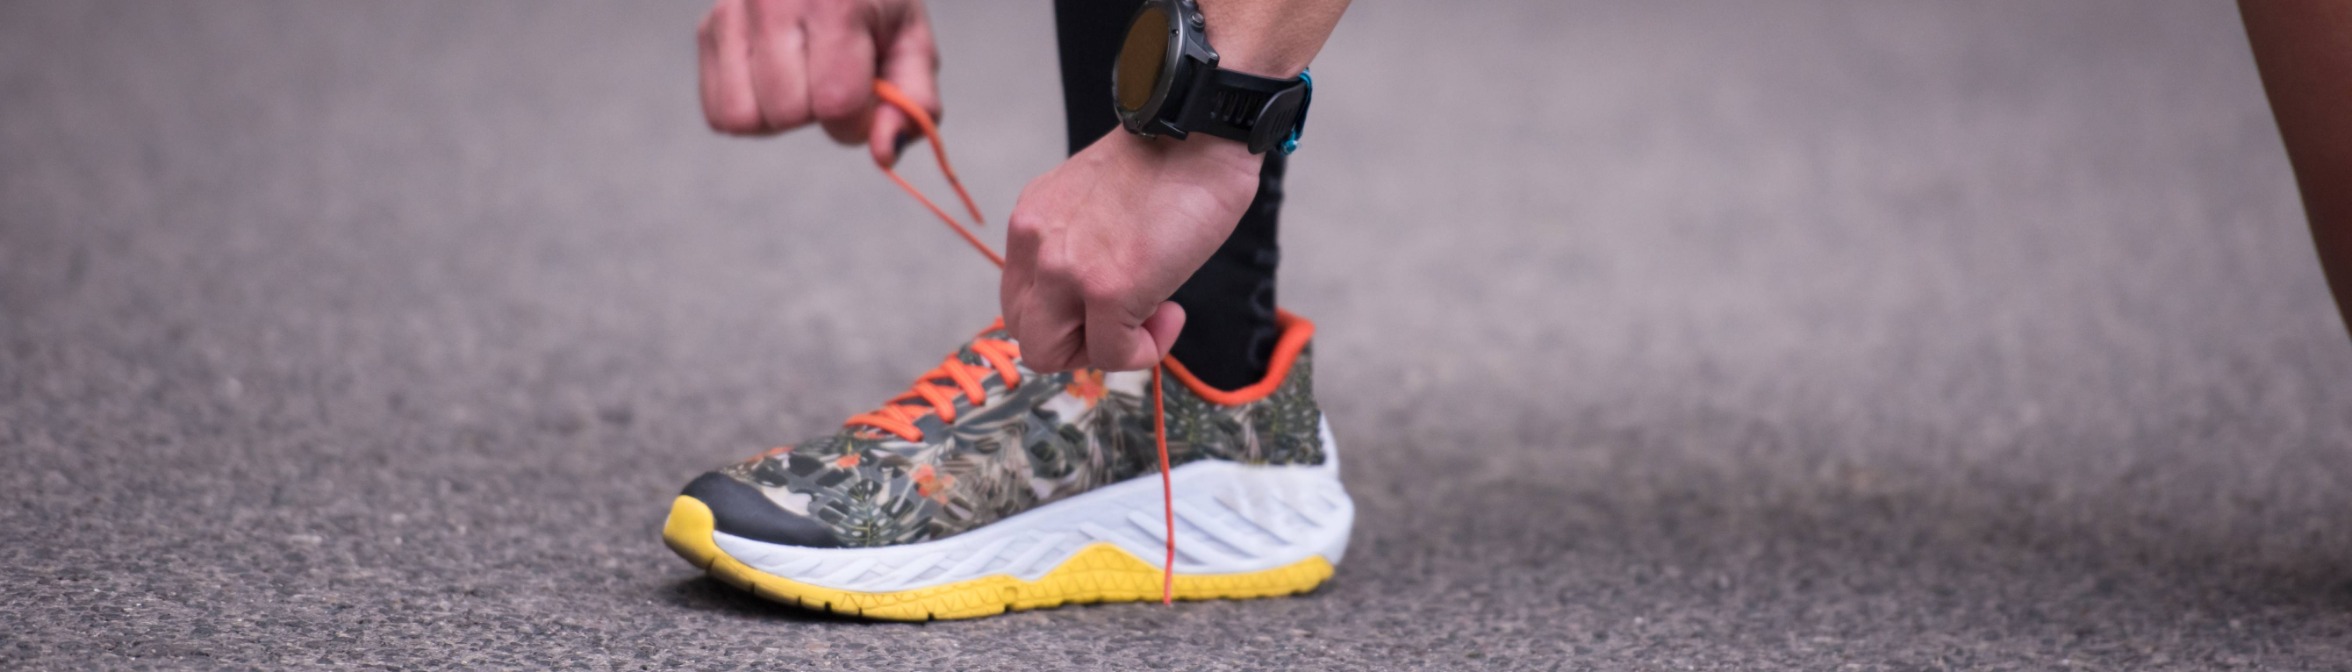 Как выбрать кроссовки для бега: советы и рекомендации